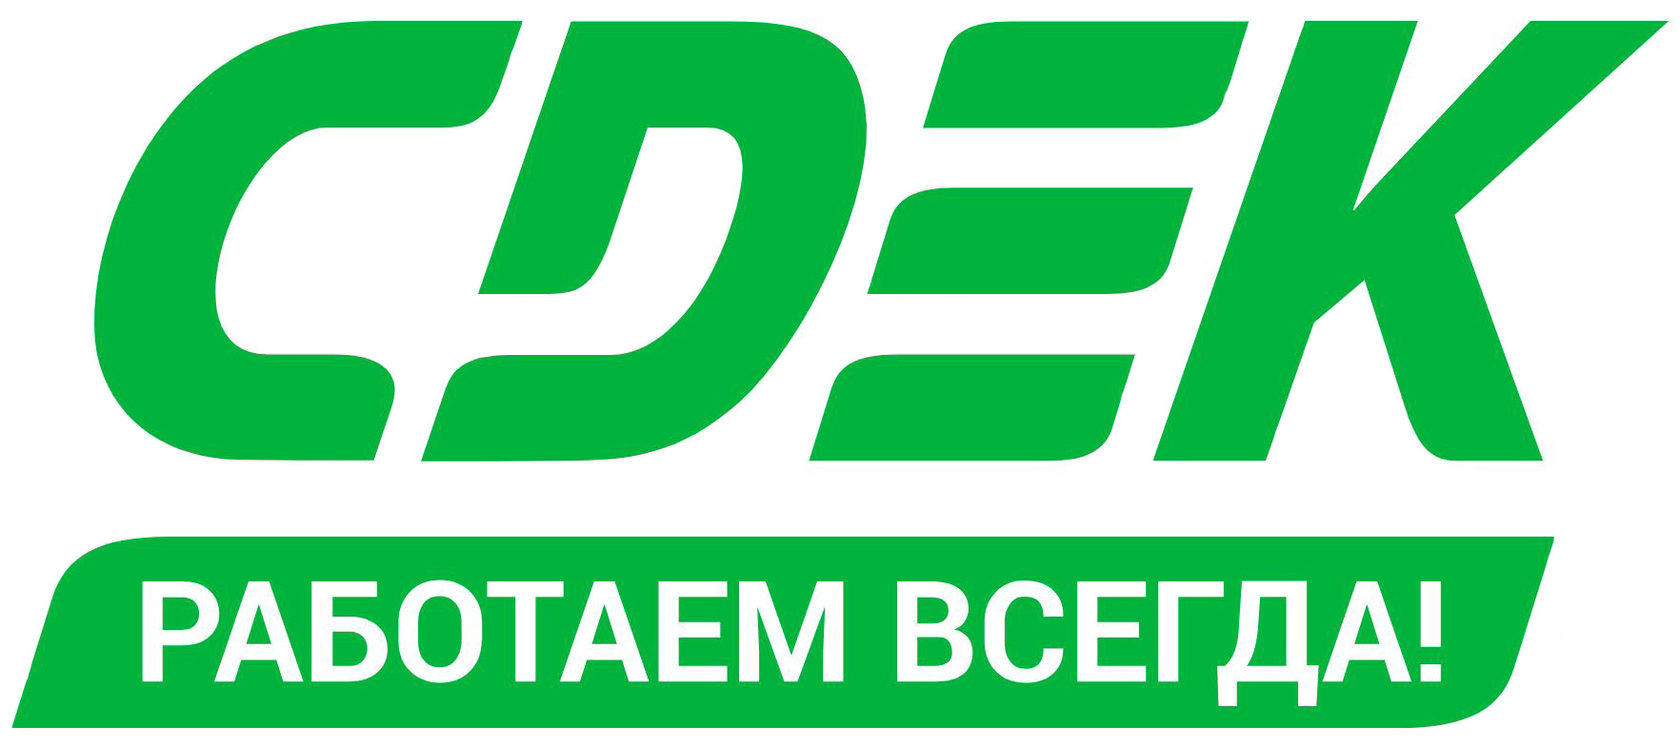 cdek-logo_1.jpg